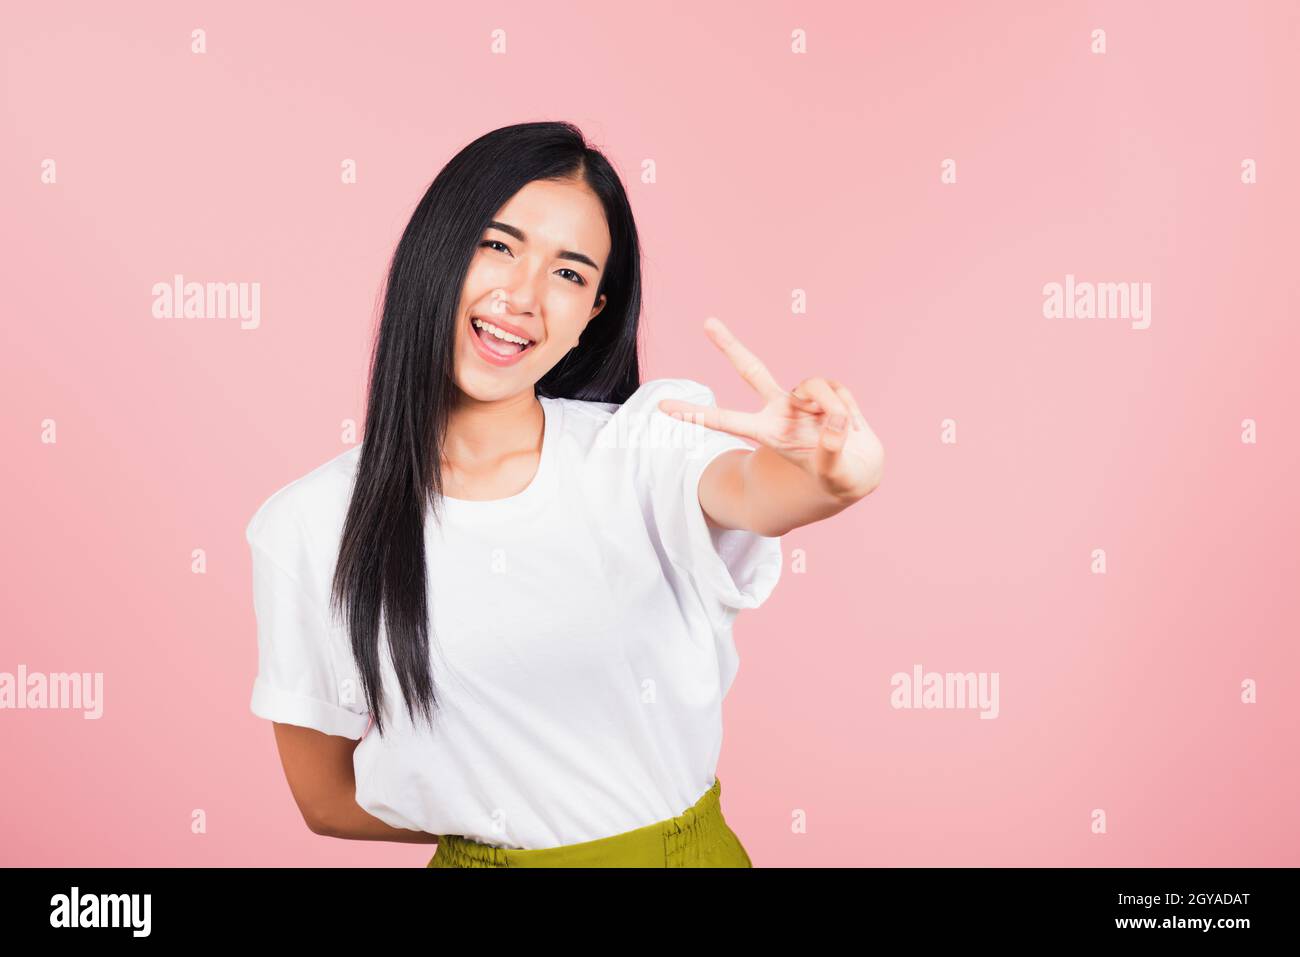 Asian heureux portrait beau mignon jeune femme adolescent sourire debout montrer doigt faire signe de victoire V-signe gestuel côté extérieur regardant le studio d'appareil photo Banque D'Images